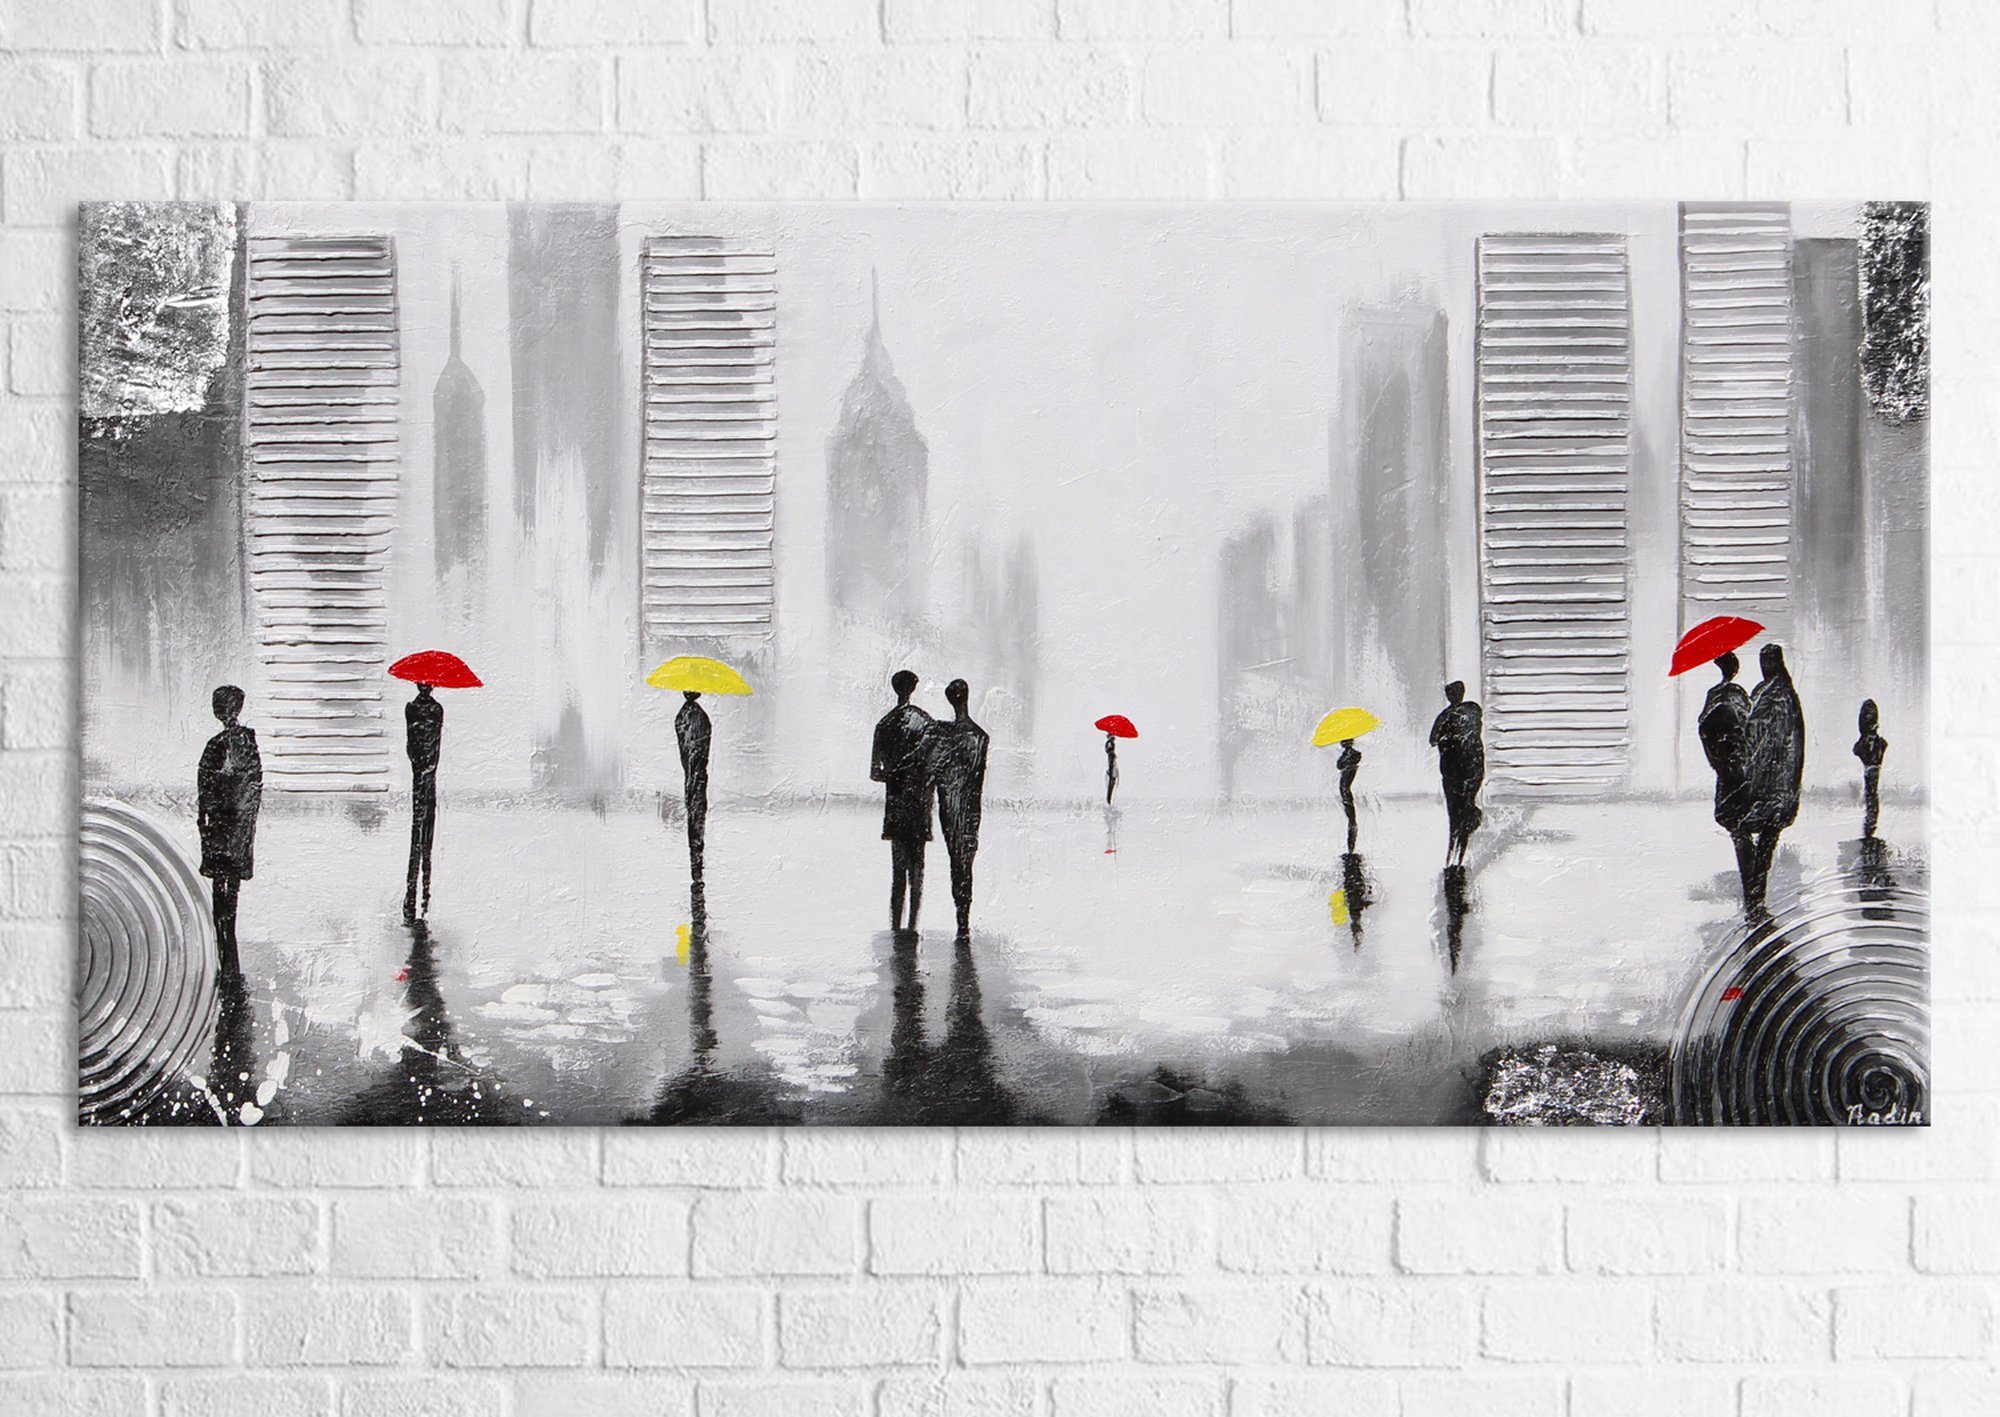 YS-Art Gemälde Angenehmes Treffen, mit Menschen, auf in Stadt Leinwand einer Regenschrim Handgemalt